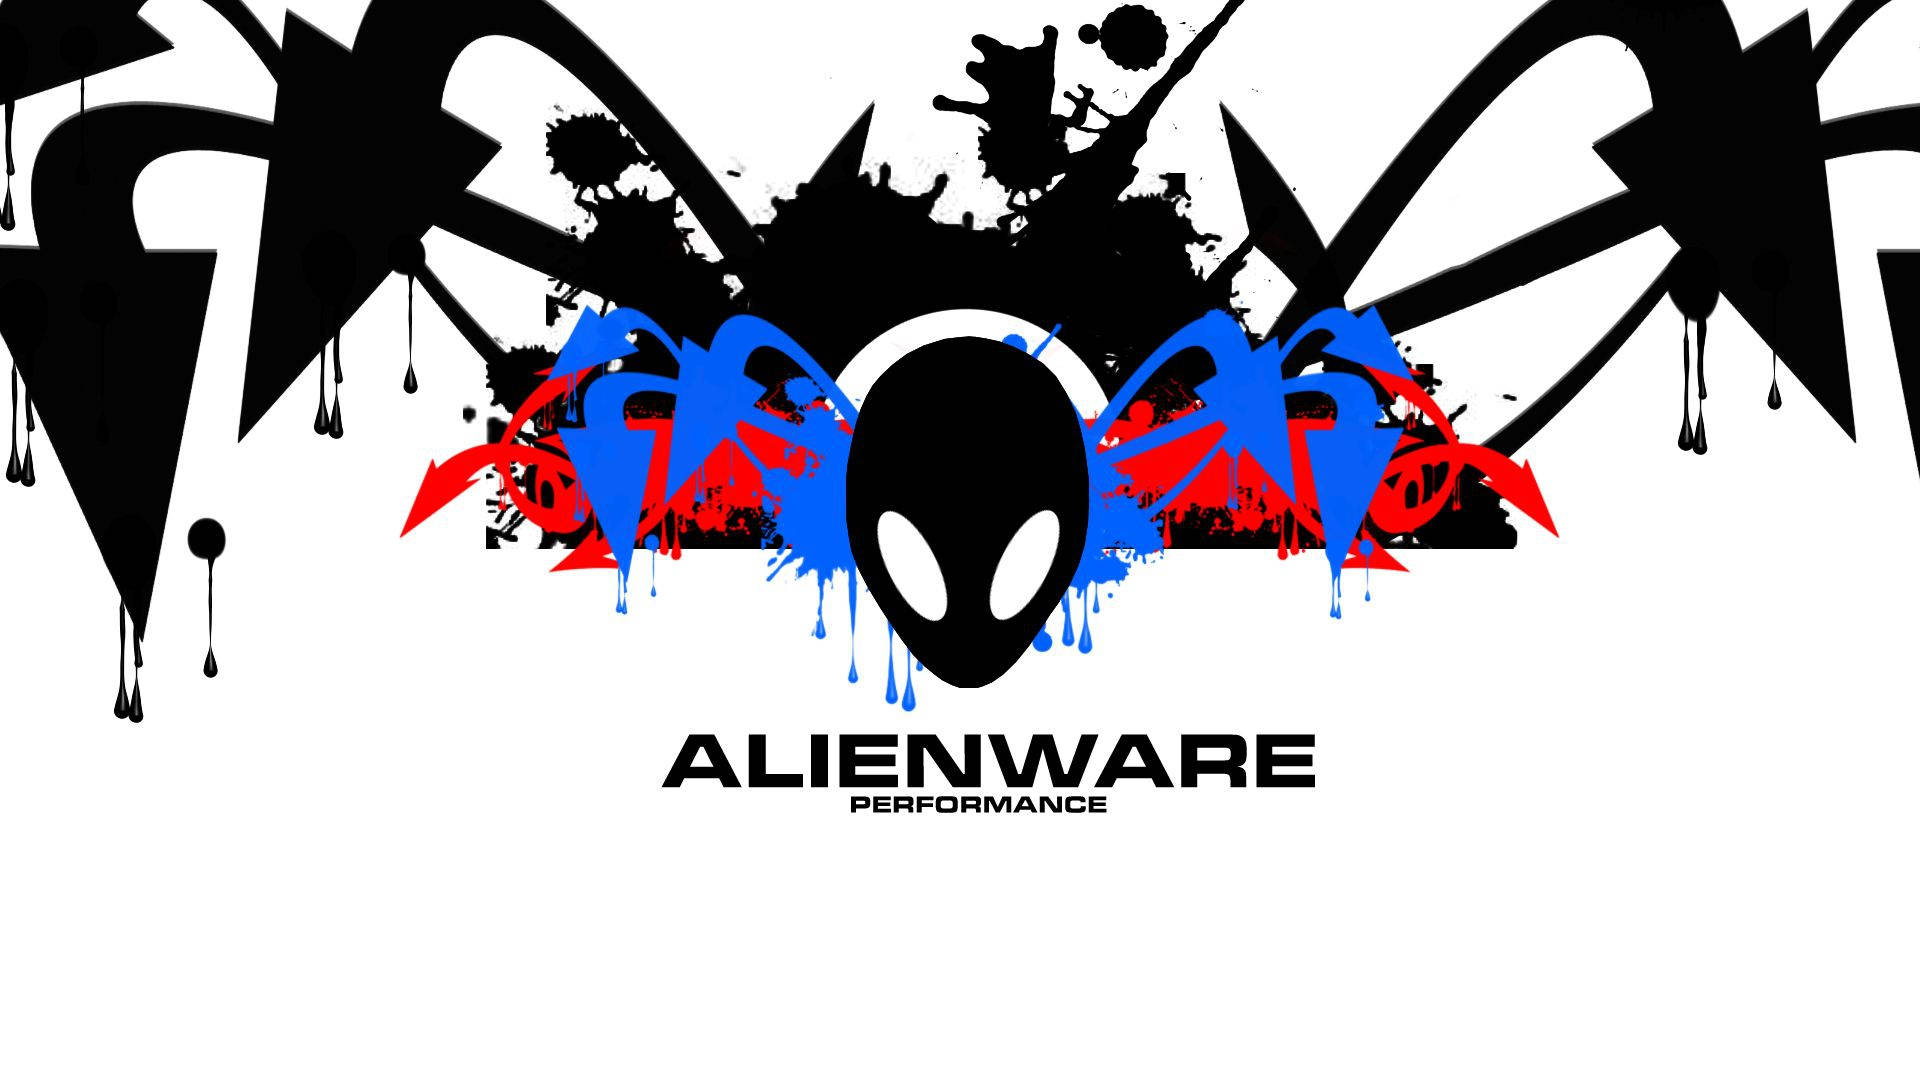 Sở hữu bức hình nền Alienware độc đáo với mẫu thiết kế hoành tráng, tuyệt đẹp, mang tới cho bạn một không gian làm việc thú vị, táo bạo và bắt mắt. Được thiết kế bởi những chuyên gia hàng đầu của Alienware, hình nền sẽ đem đến cho bạn trải nghiệm hoàn toàn khác biệt.